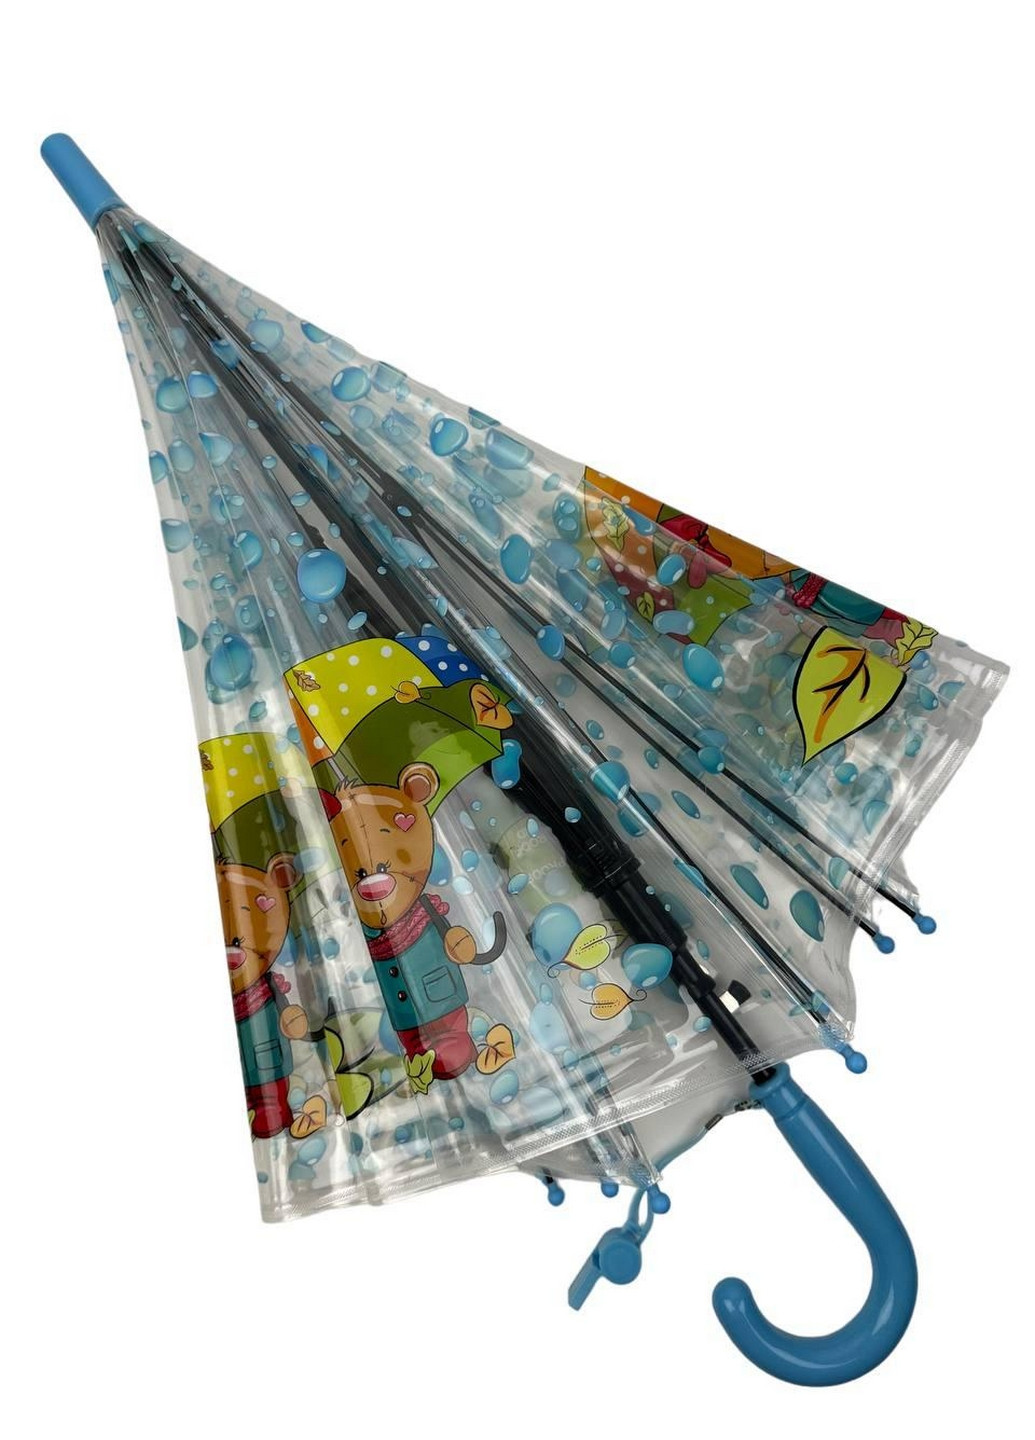 Детский прозрачный зонт трость полуавтомат Rain (276392398)